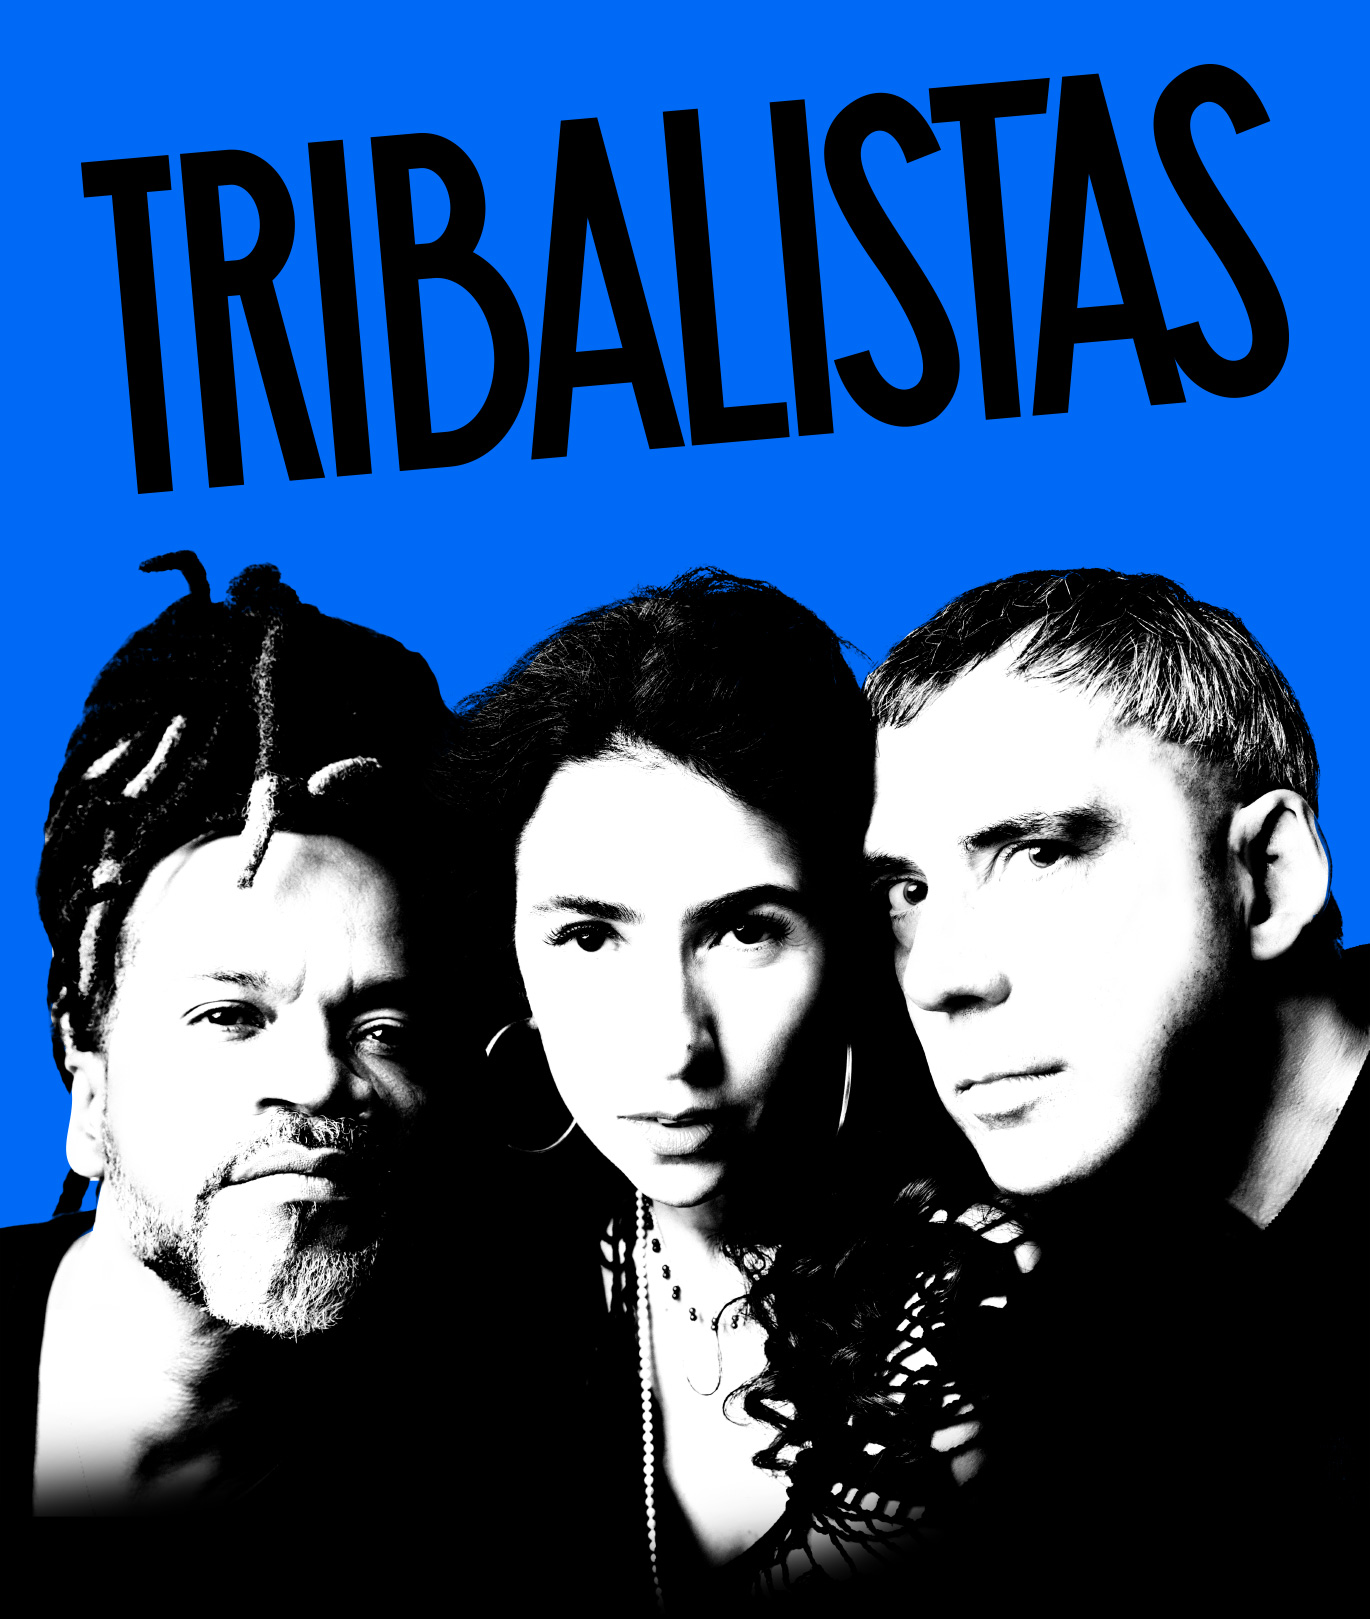  Pré-venda de ingressos para show do Tribalistas começa nesta semana